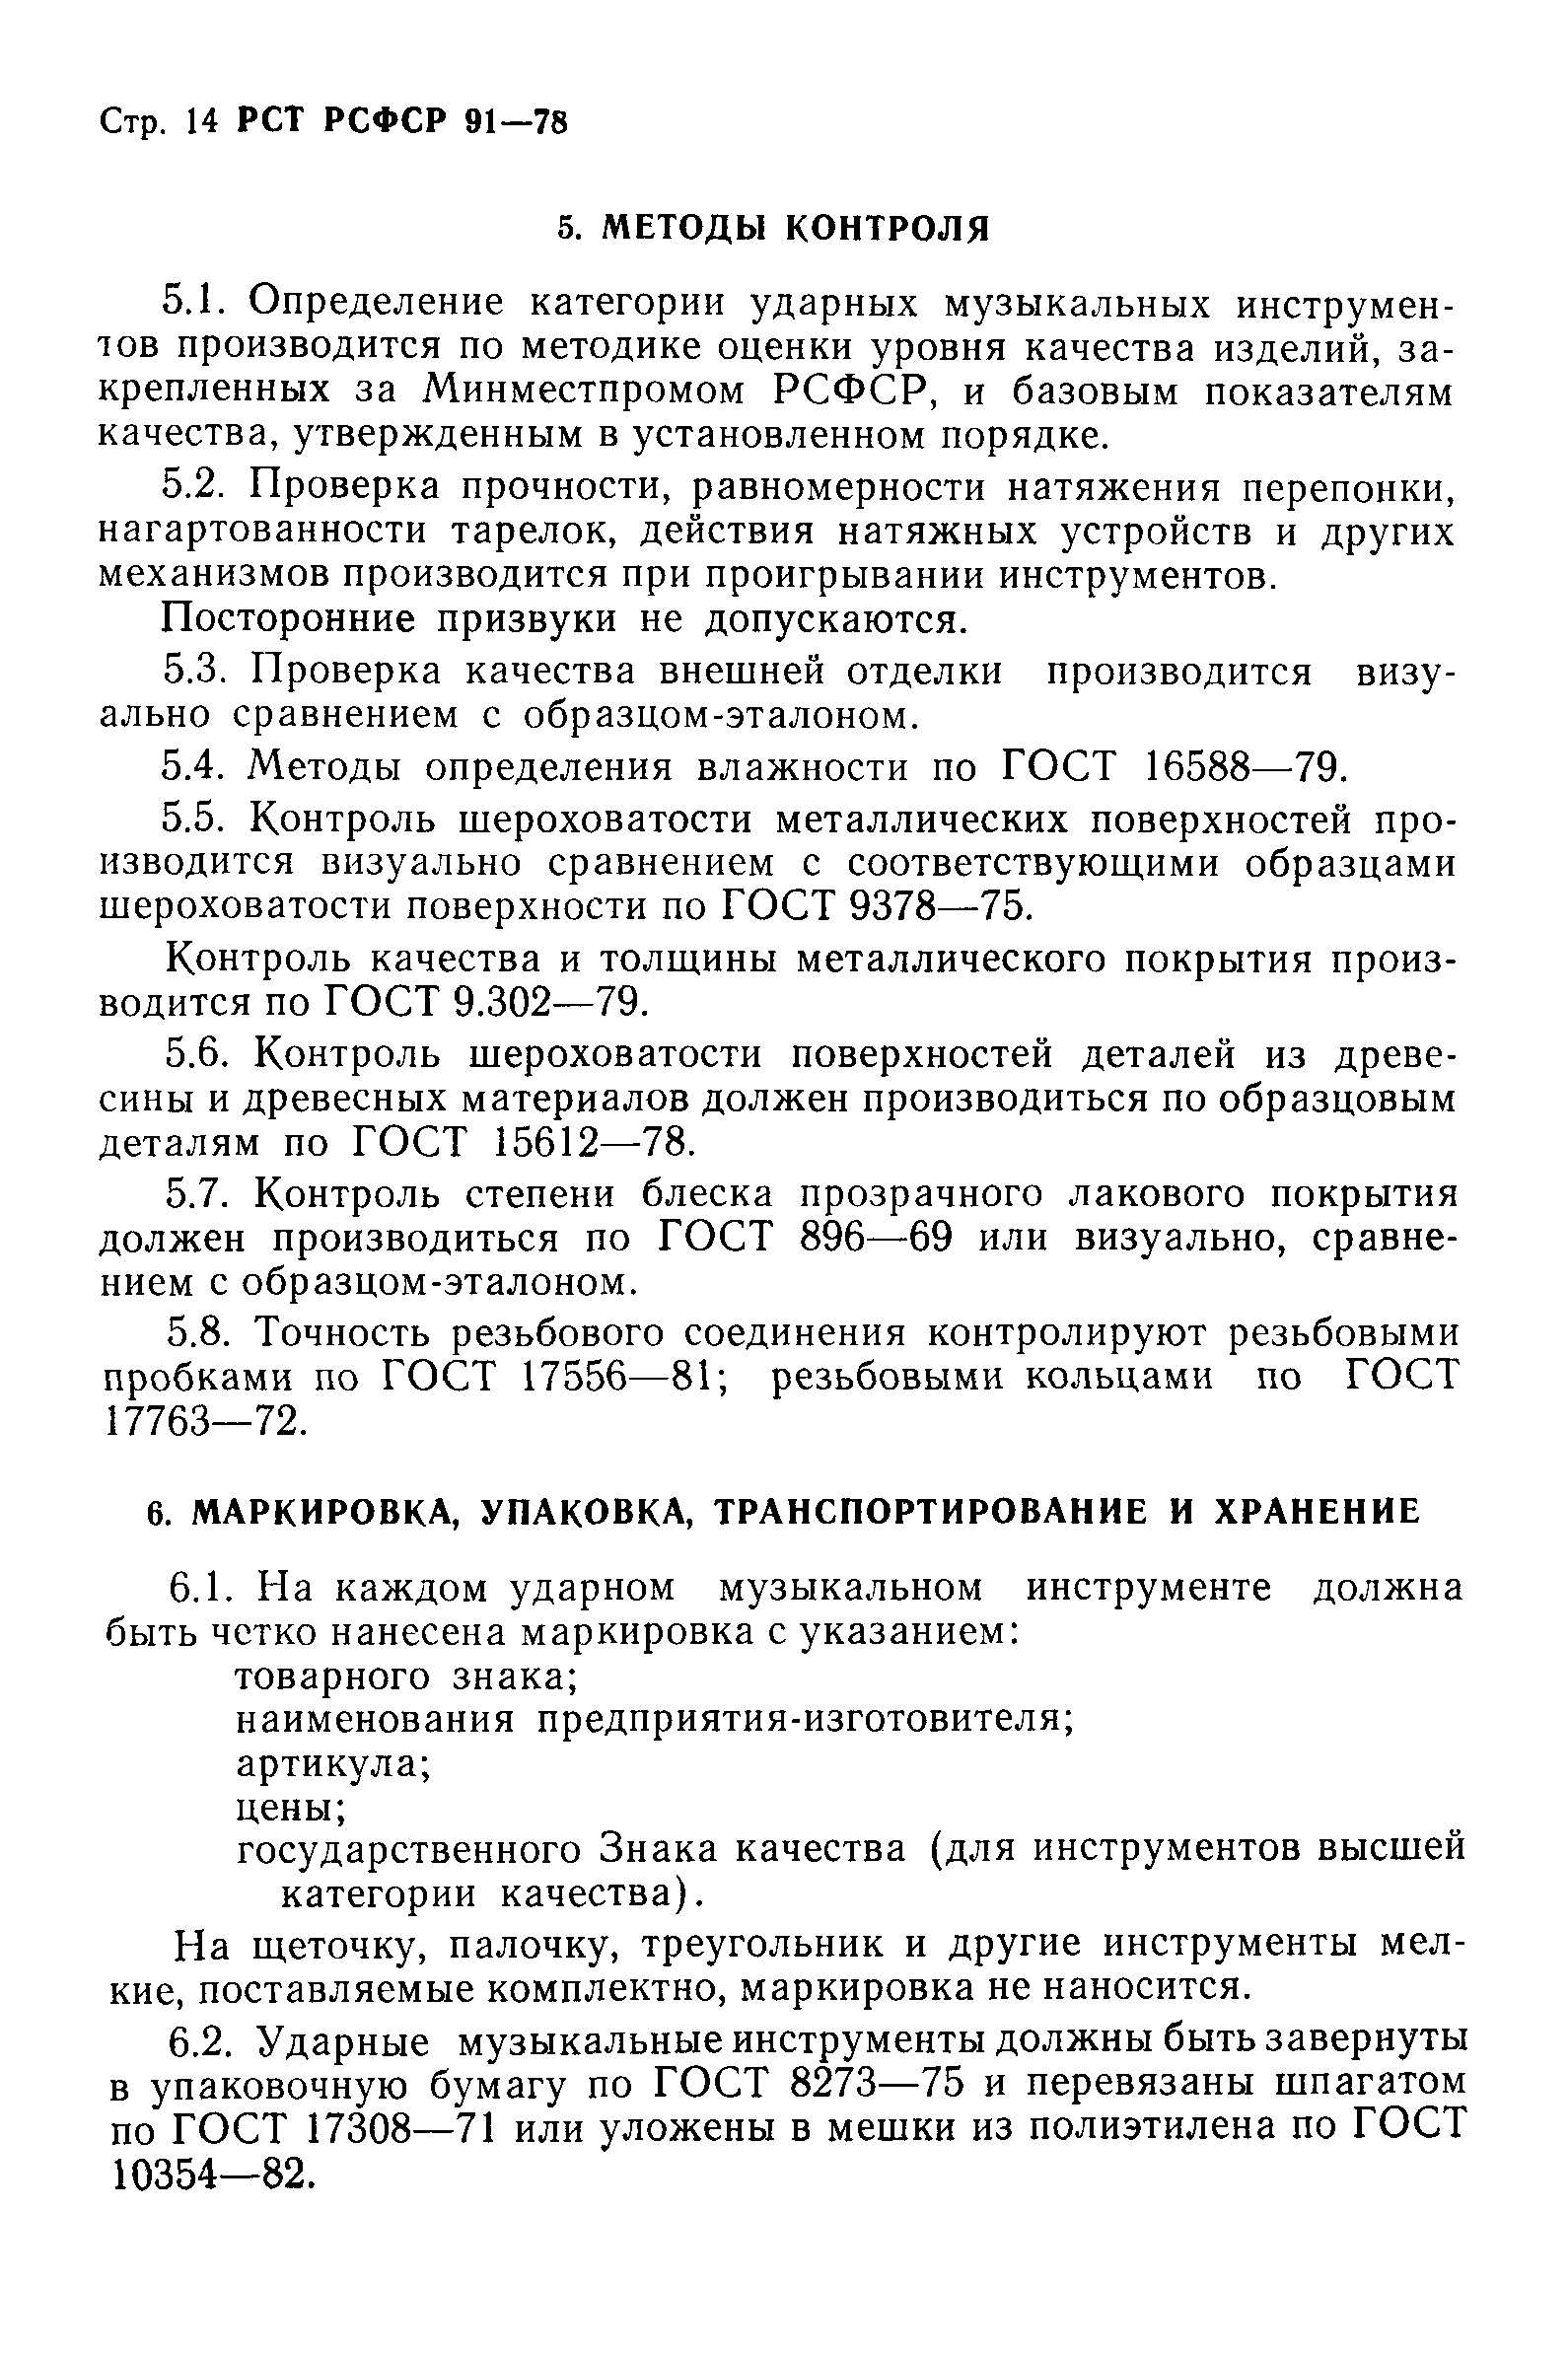 РСТ РСФСР 91-78